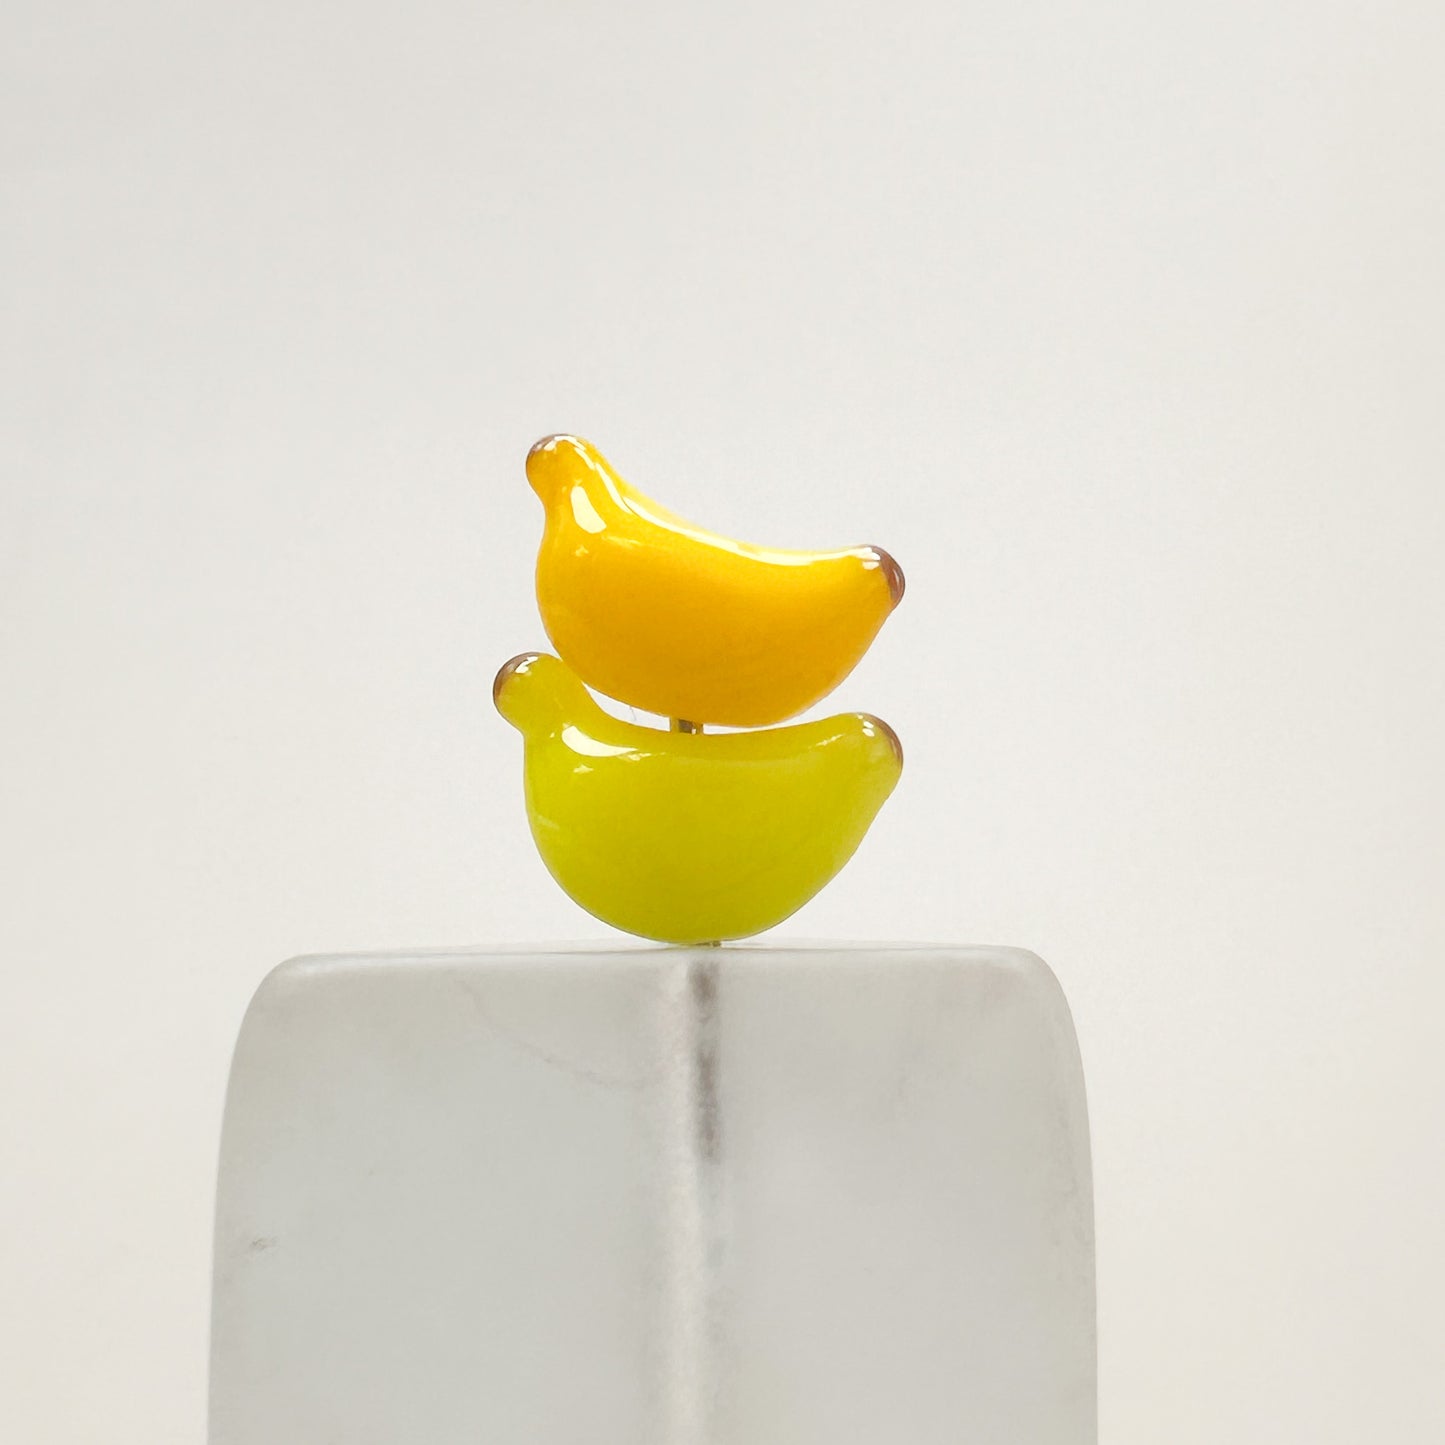 Chibi Handmade Glass Beads - Banana-The Bead Gallery Honolulu